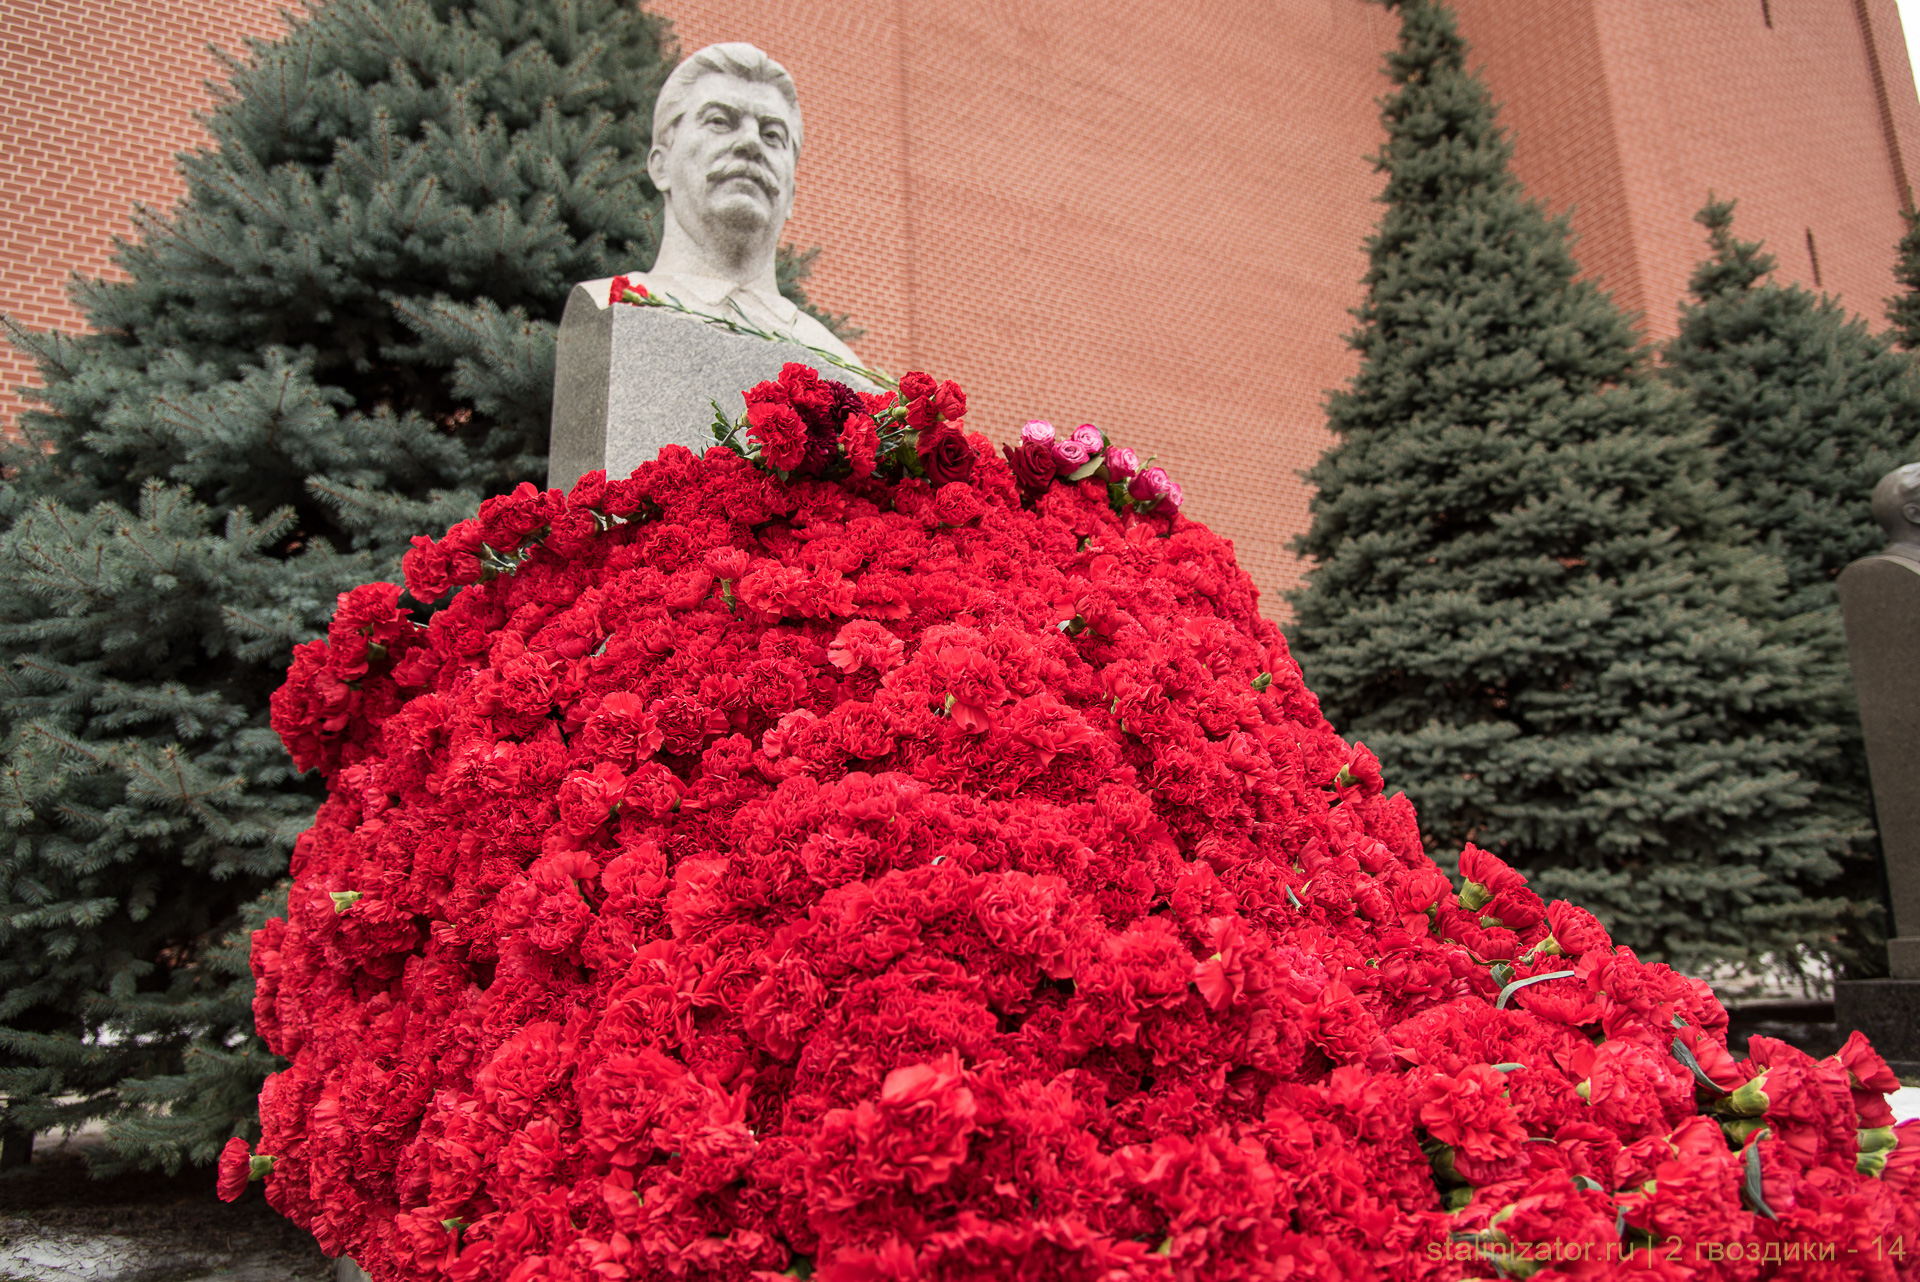 5 марта 2018 года состоится традиционное возложение цветов к могиле Иосифа Виссарионовича Сталина у Кремлевской стены в Москве.